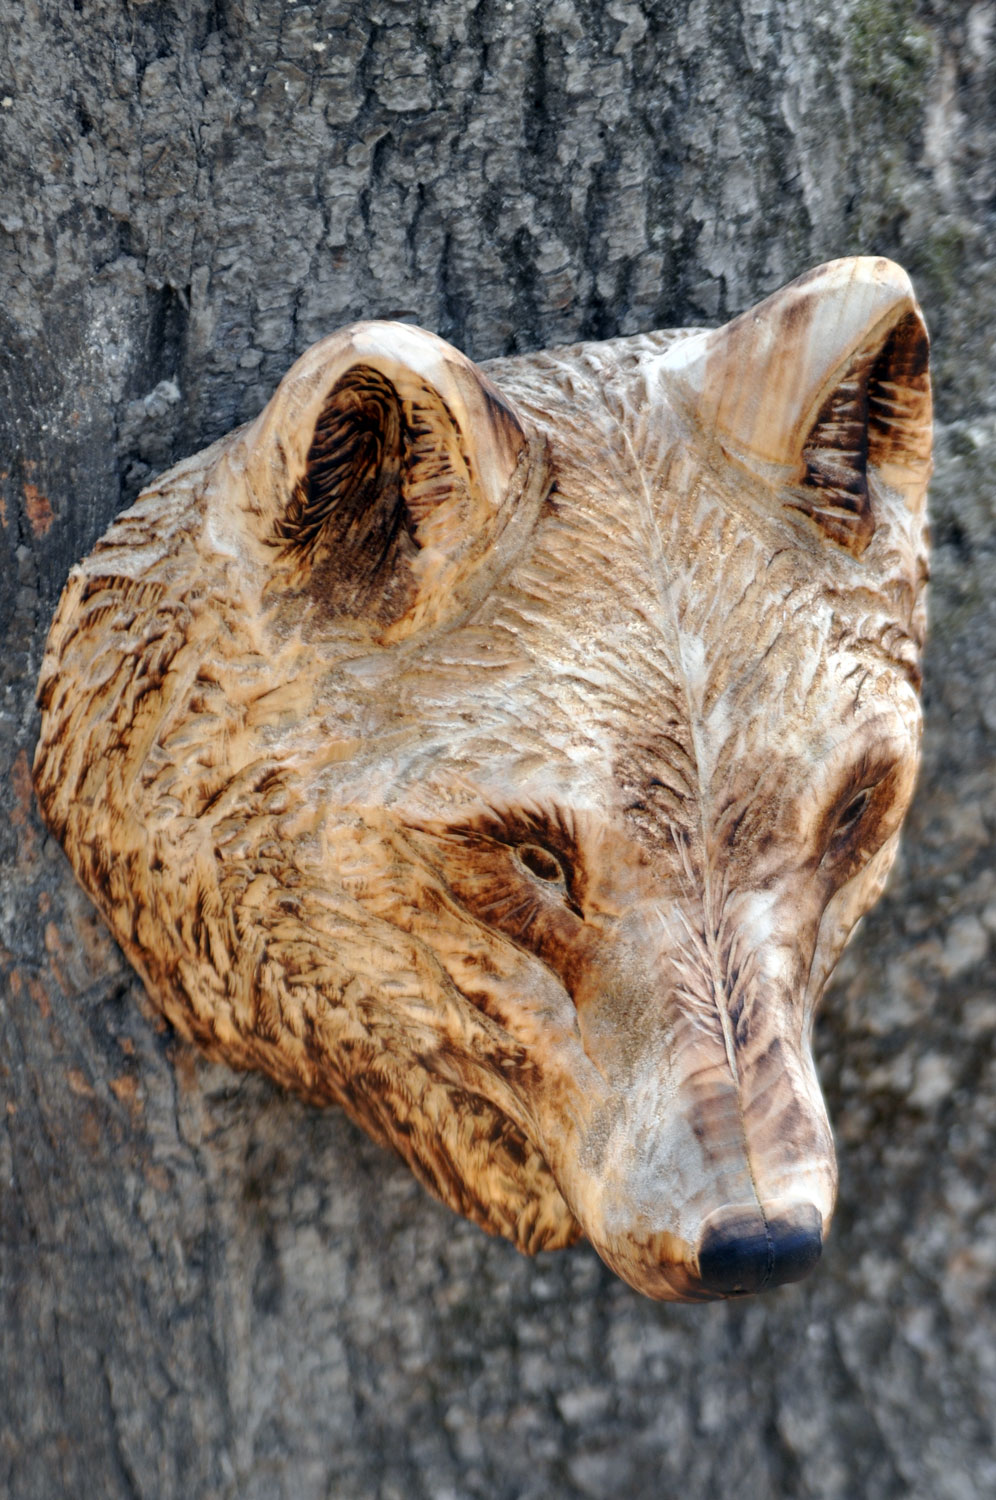 vlk-drevorezba-plastika-vyrezavani-carwing-woodcarving-trofej-hlava-radekzdrazil-20190331-011